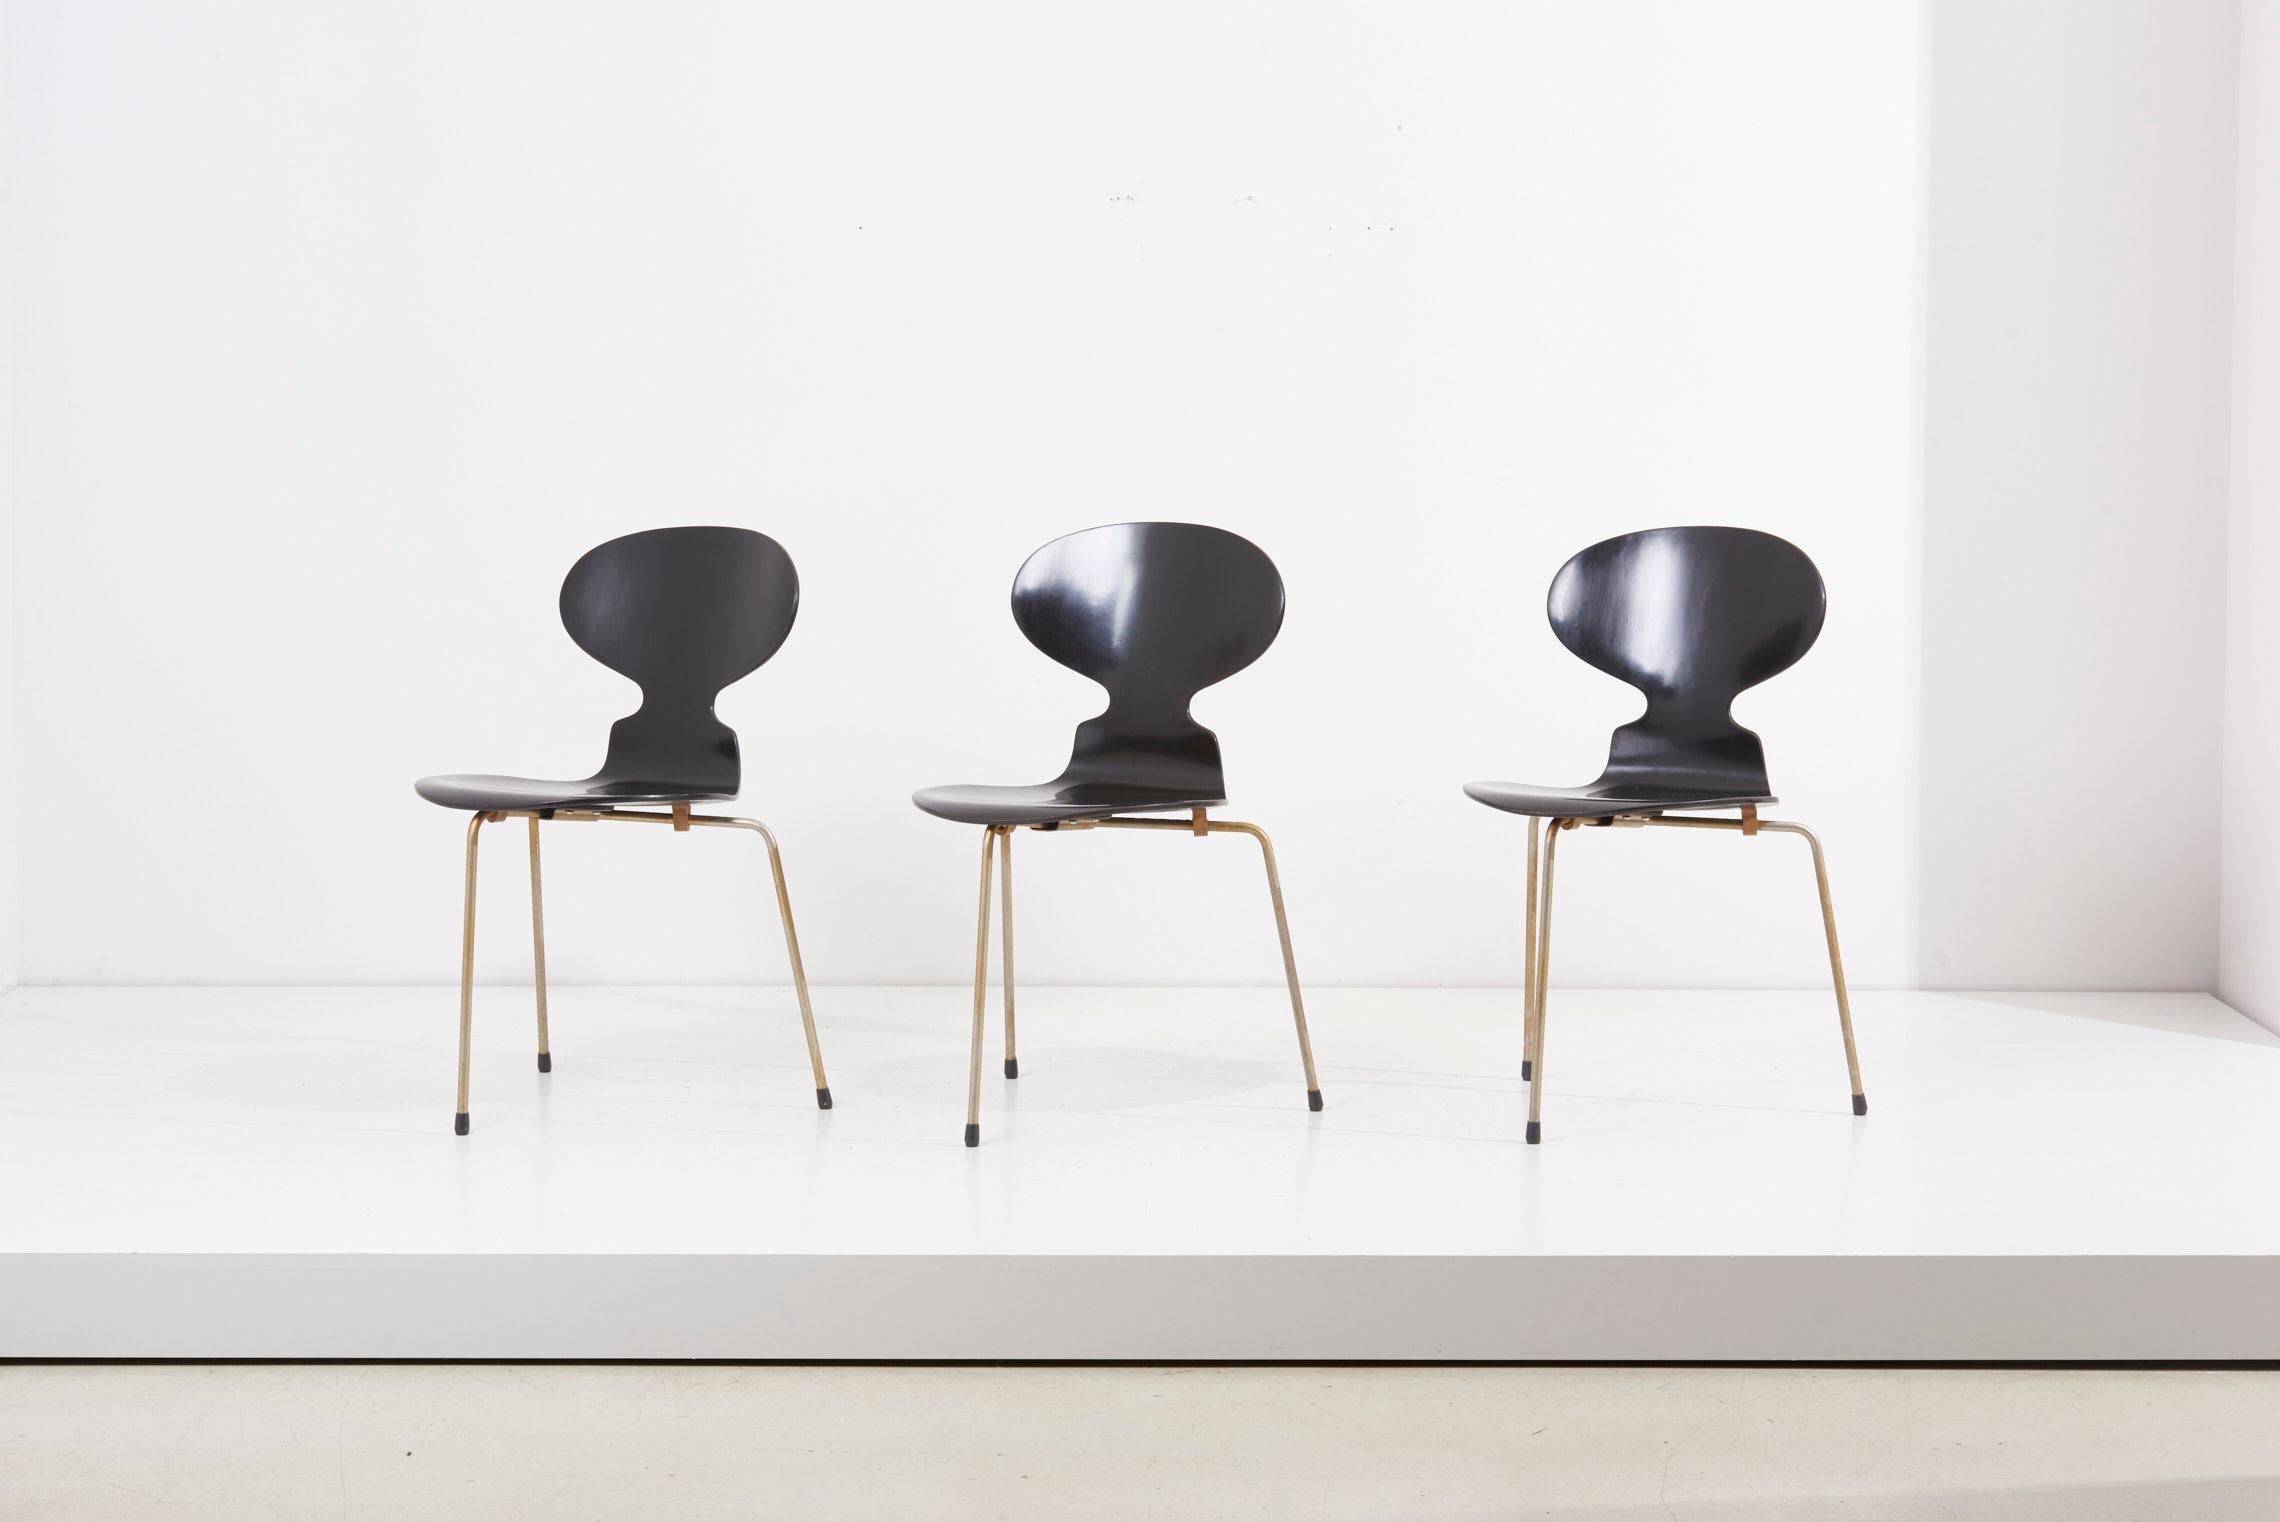 Satz von 3 Ess- oder Beistellstühlen, entworfen vom dänischen Designer Arne Jacobsen, hergestellt von Fritz Hansen. Bitte beachten Sie, dass die Stühle aus einer frühen Produktion stammen und einige Alters- und Gebrauchsspuren aufweisen.
   